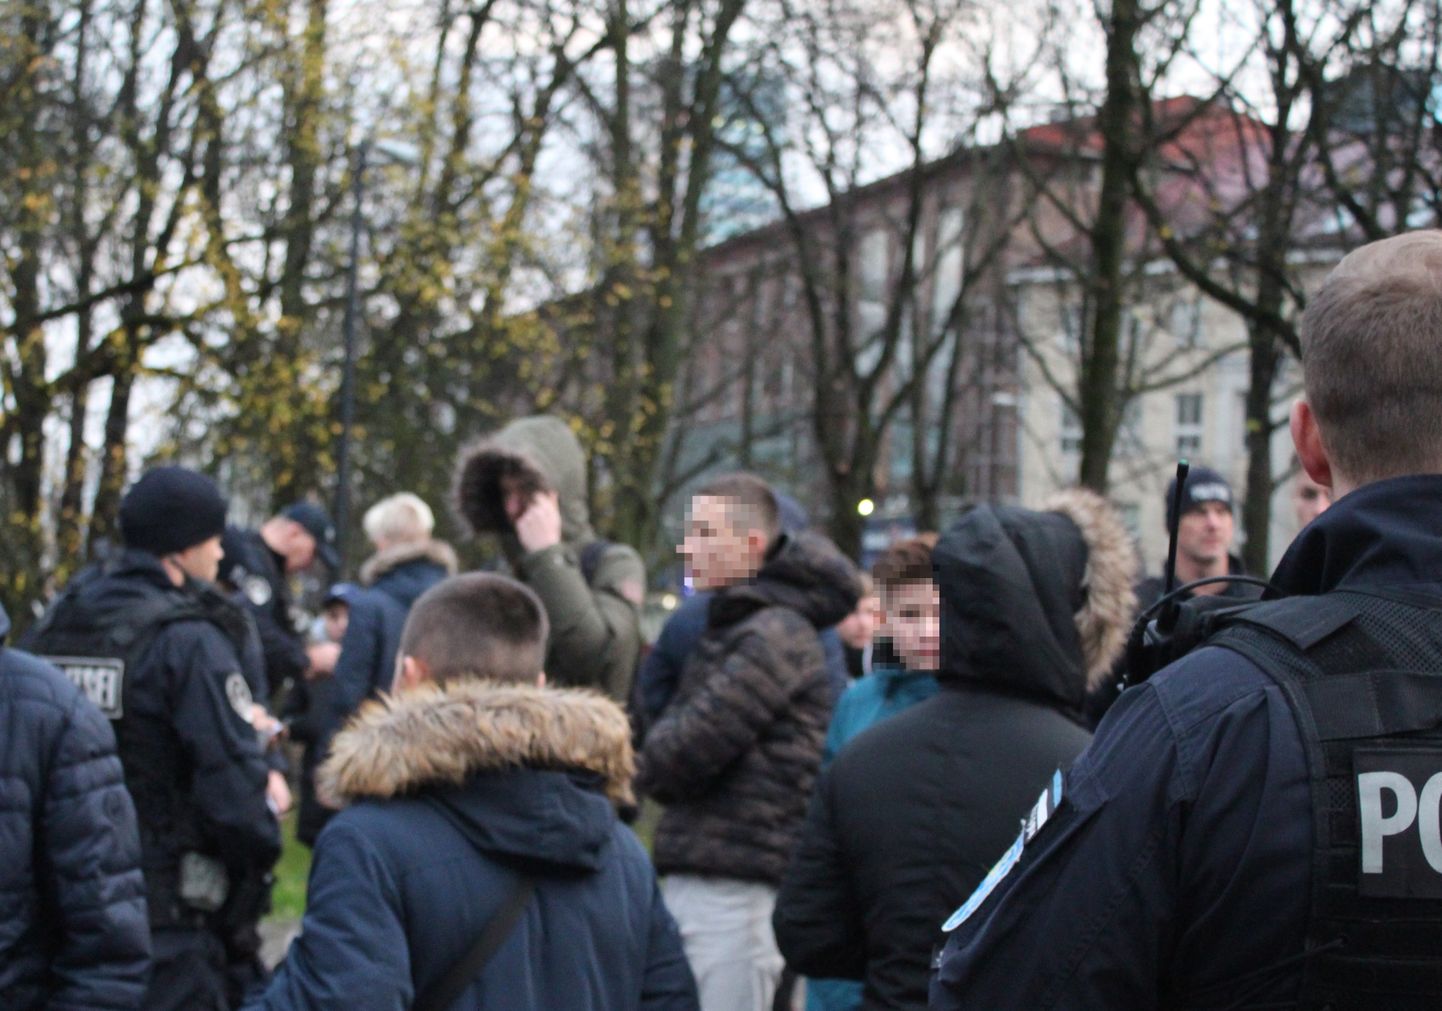 Facebookis levinud üleskutse peale pagulasi peksma kogunenud Tallinna noored